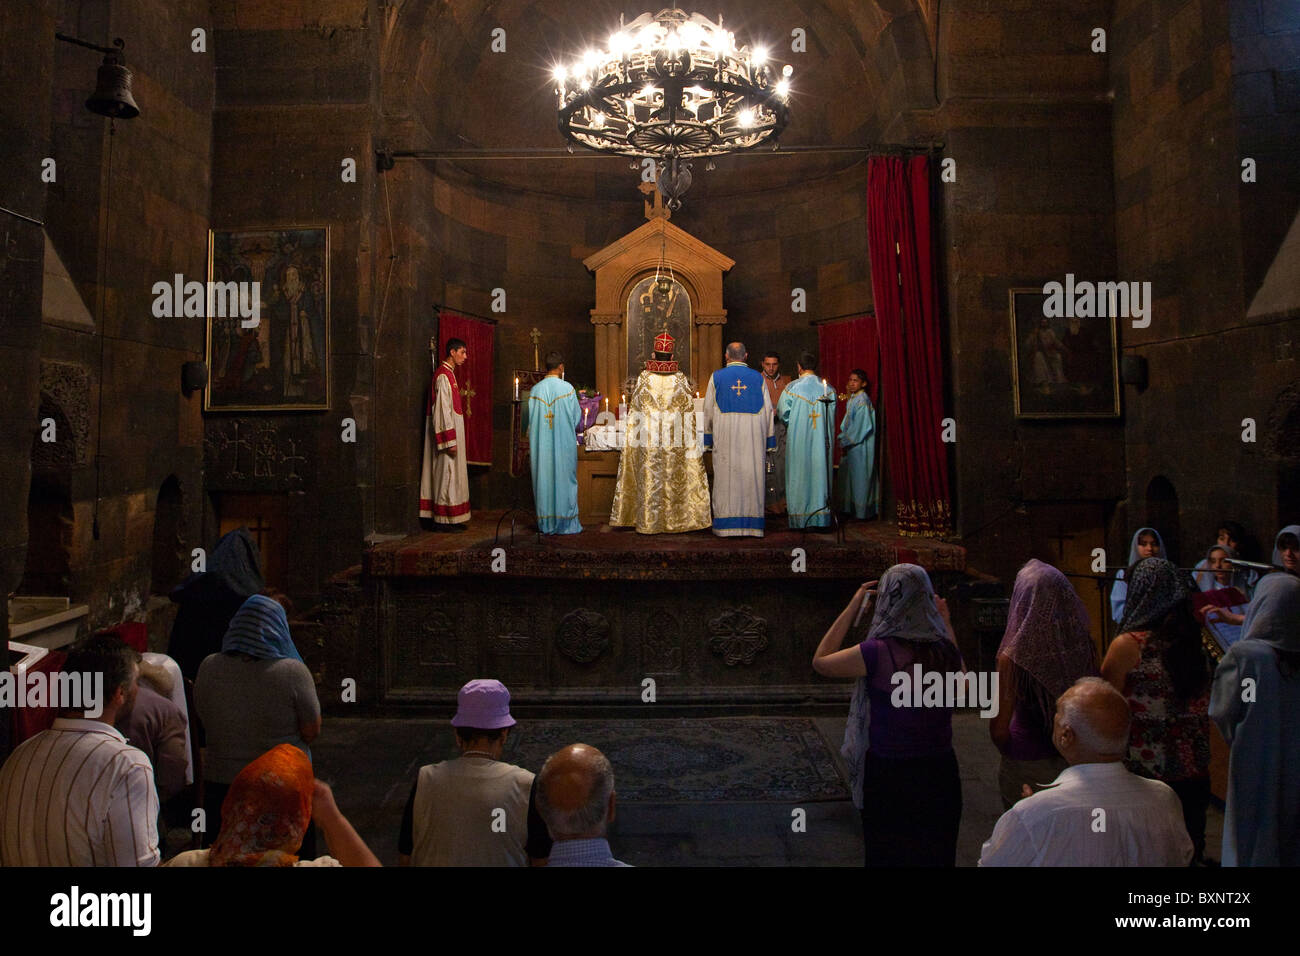 Mass at Khor Virap Monastery, Armenia Stock Photo